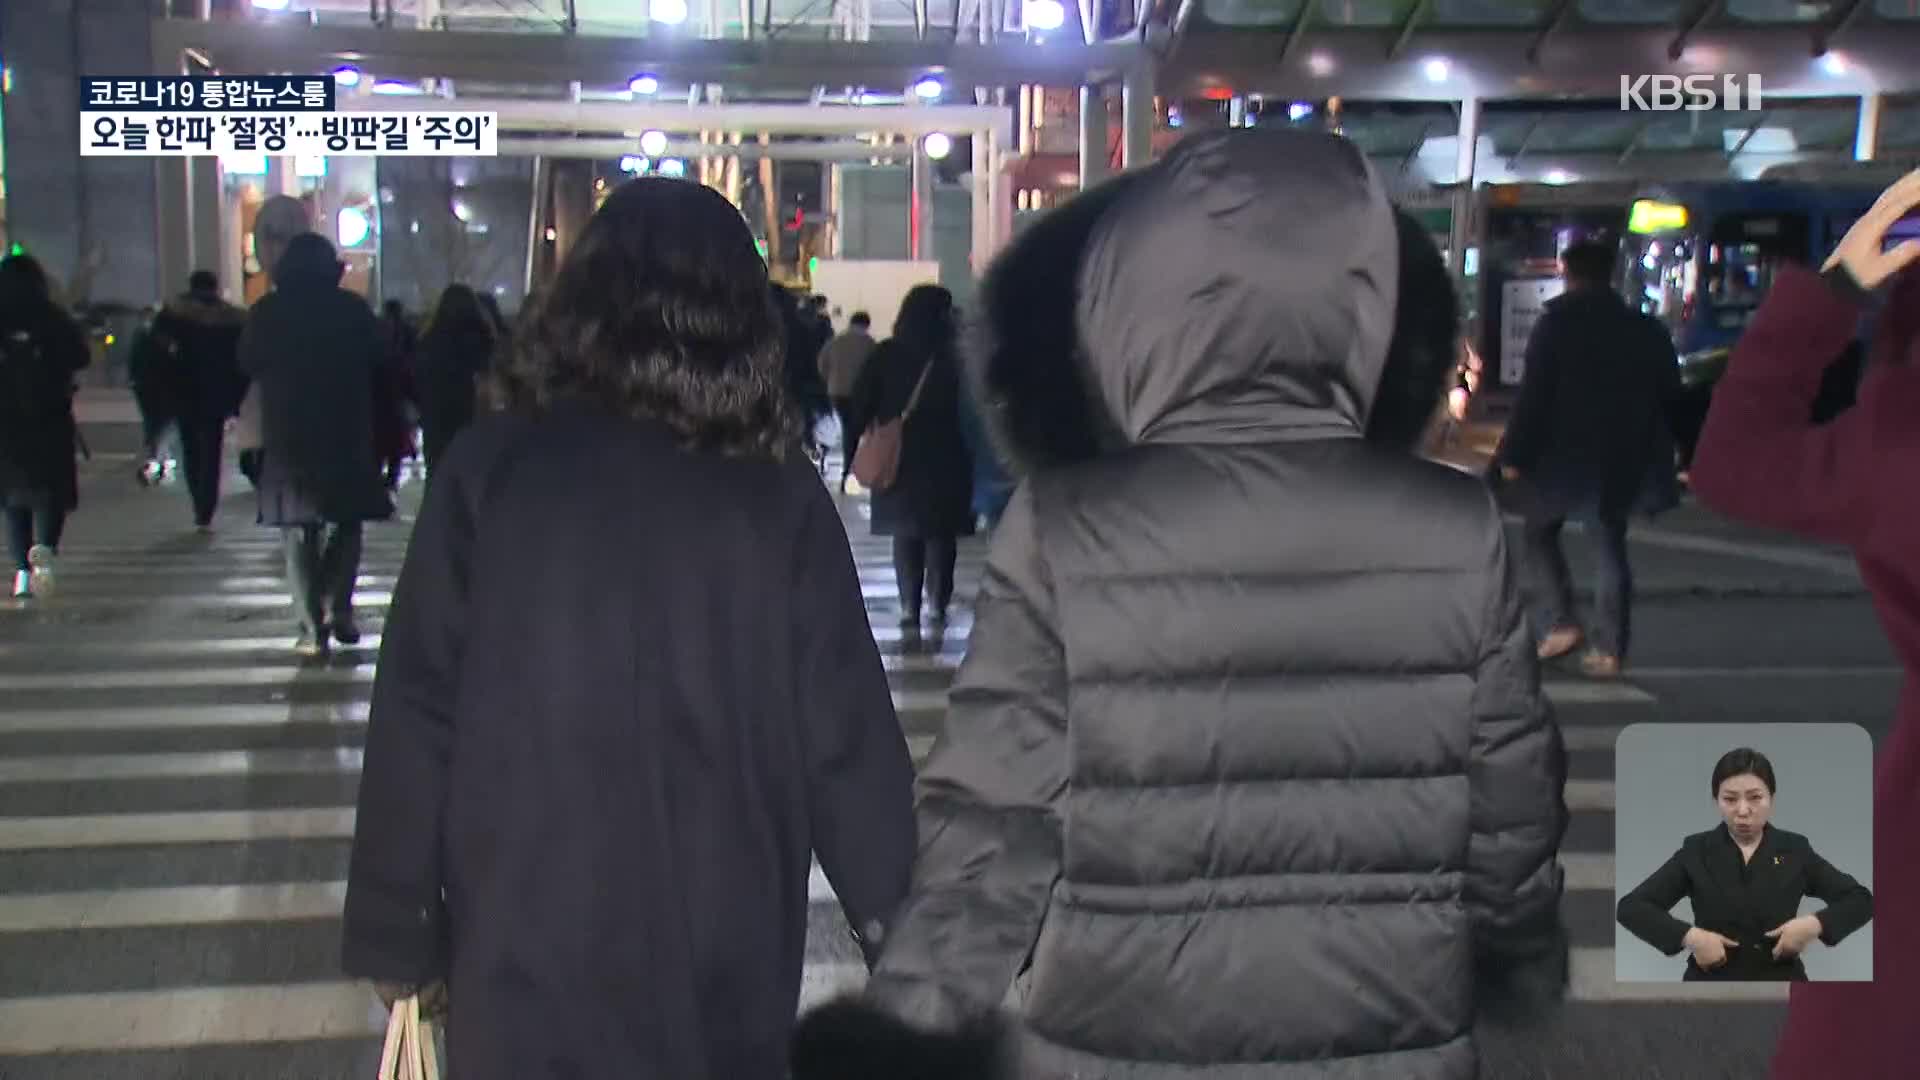 오늘 올겨울 최강 한파…서울시 대중교통 운행 횟수 늘려